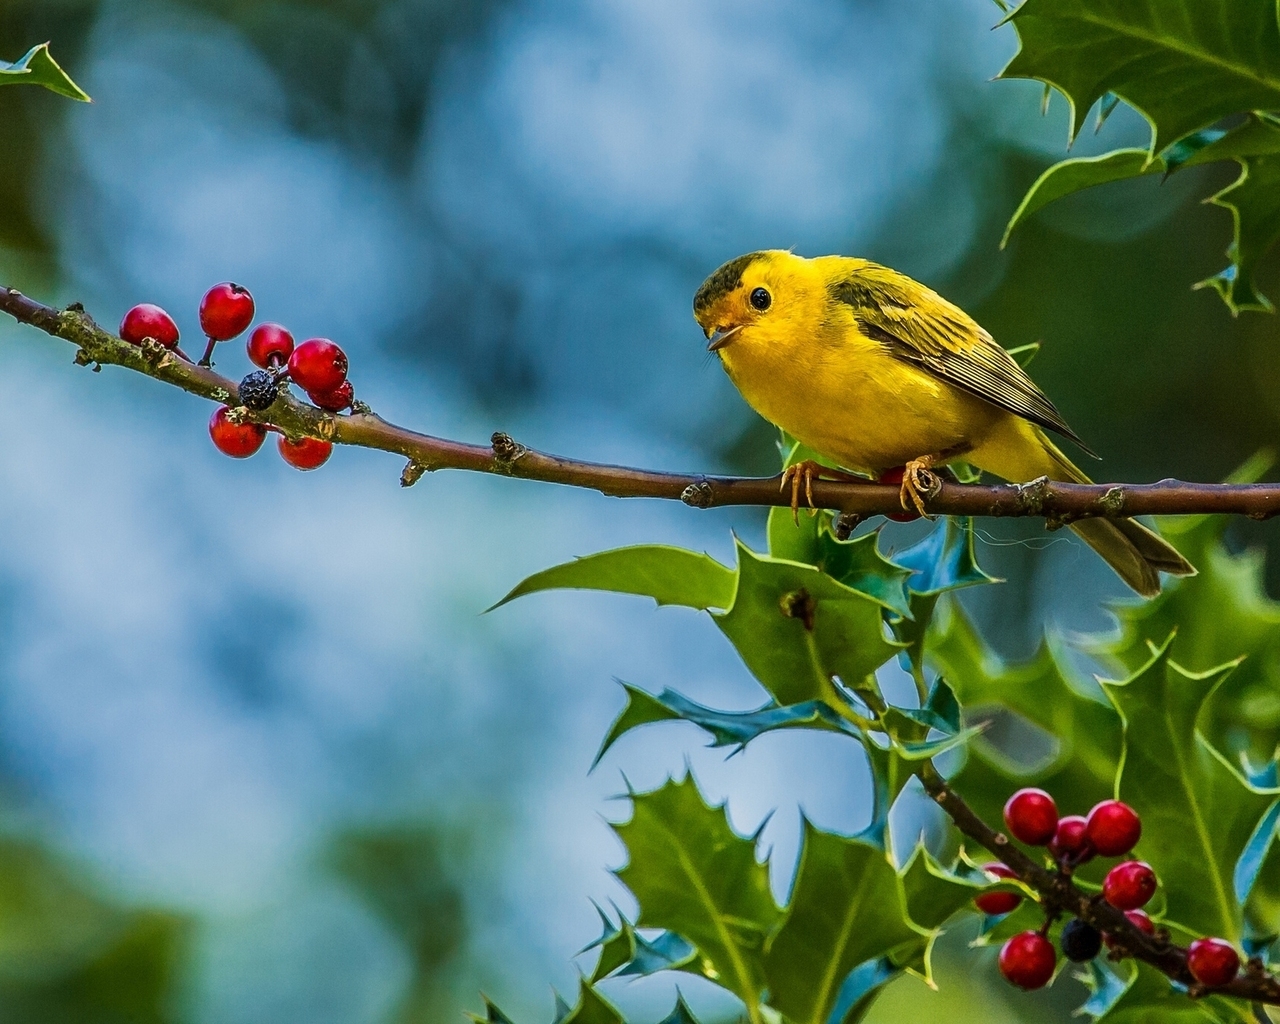 Cute Little Yellow Bird for 1280 x 1024 resolution